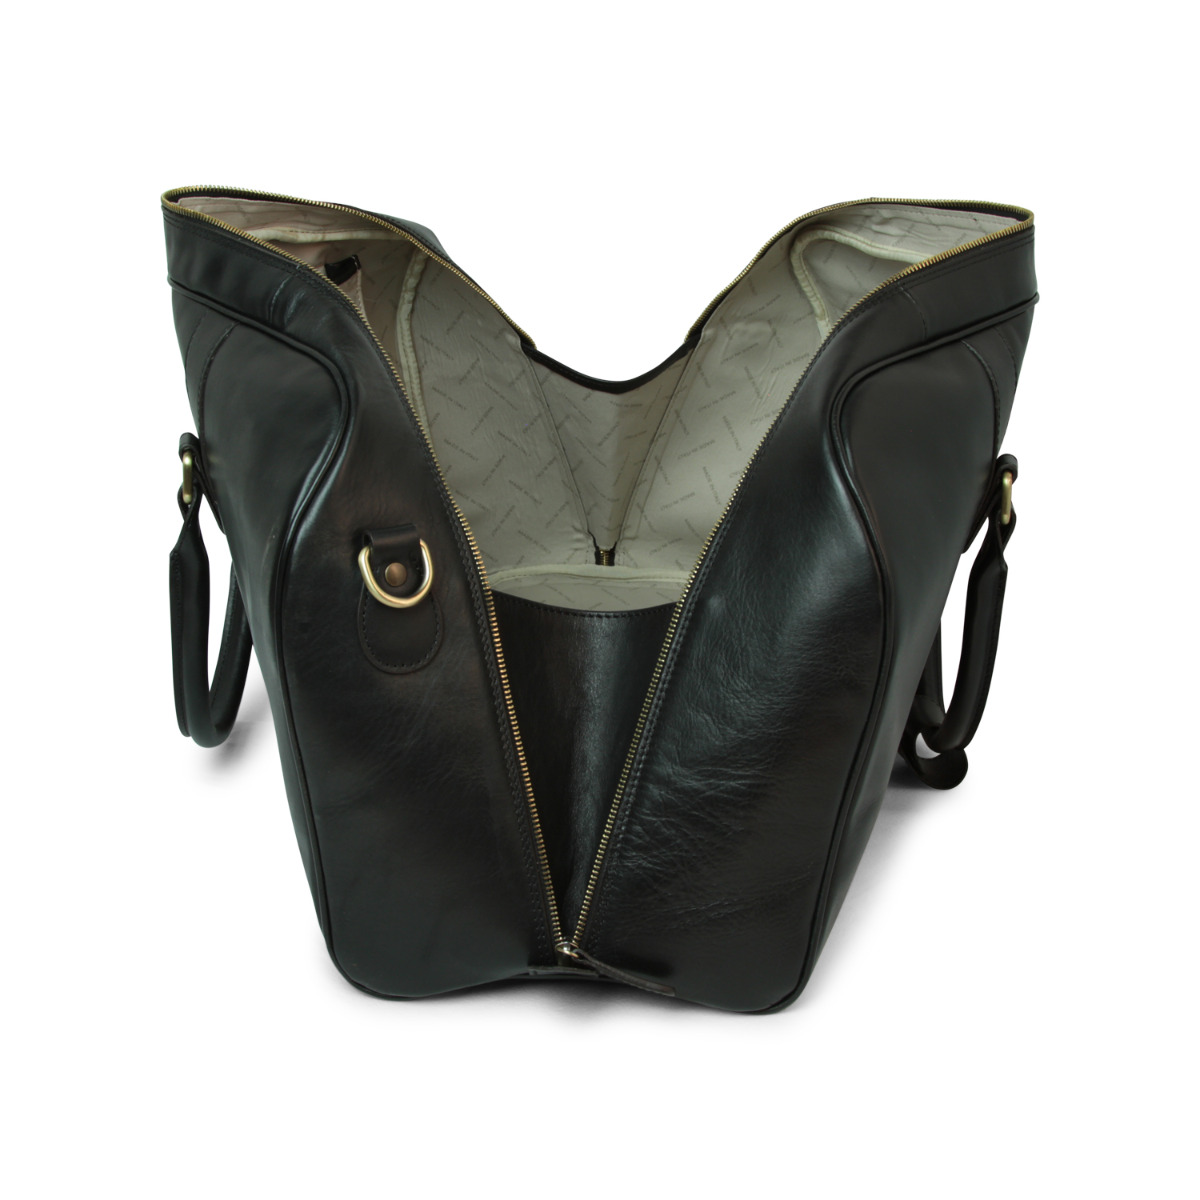 Full grain leather large travel bag - black|414991NE|Old Angler Firenze